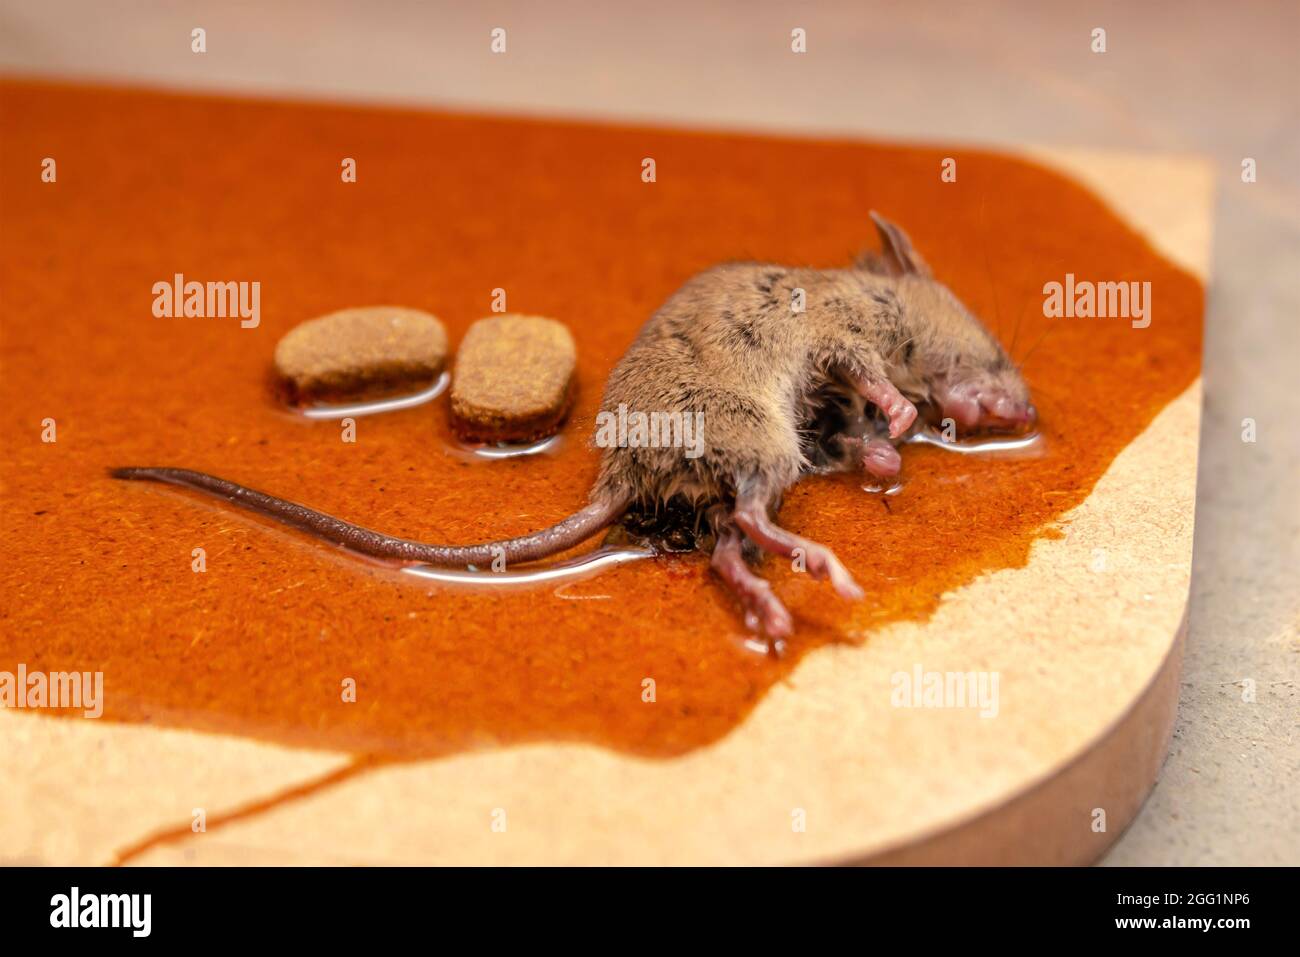 Piège à colle pour souris - Plaque de glu souris